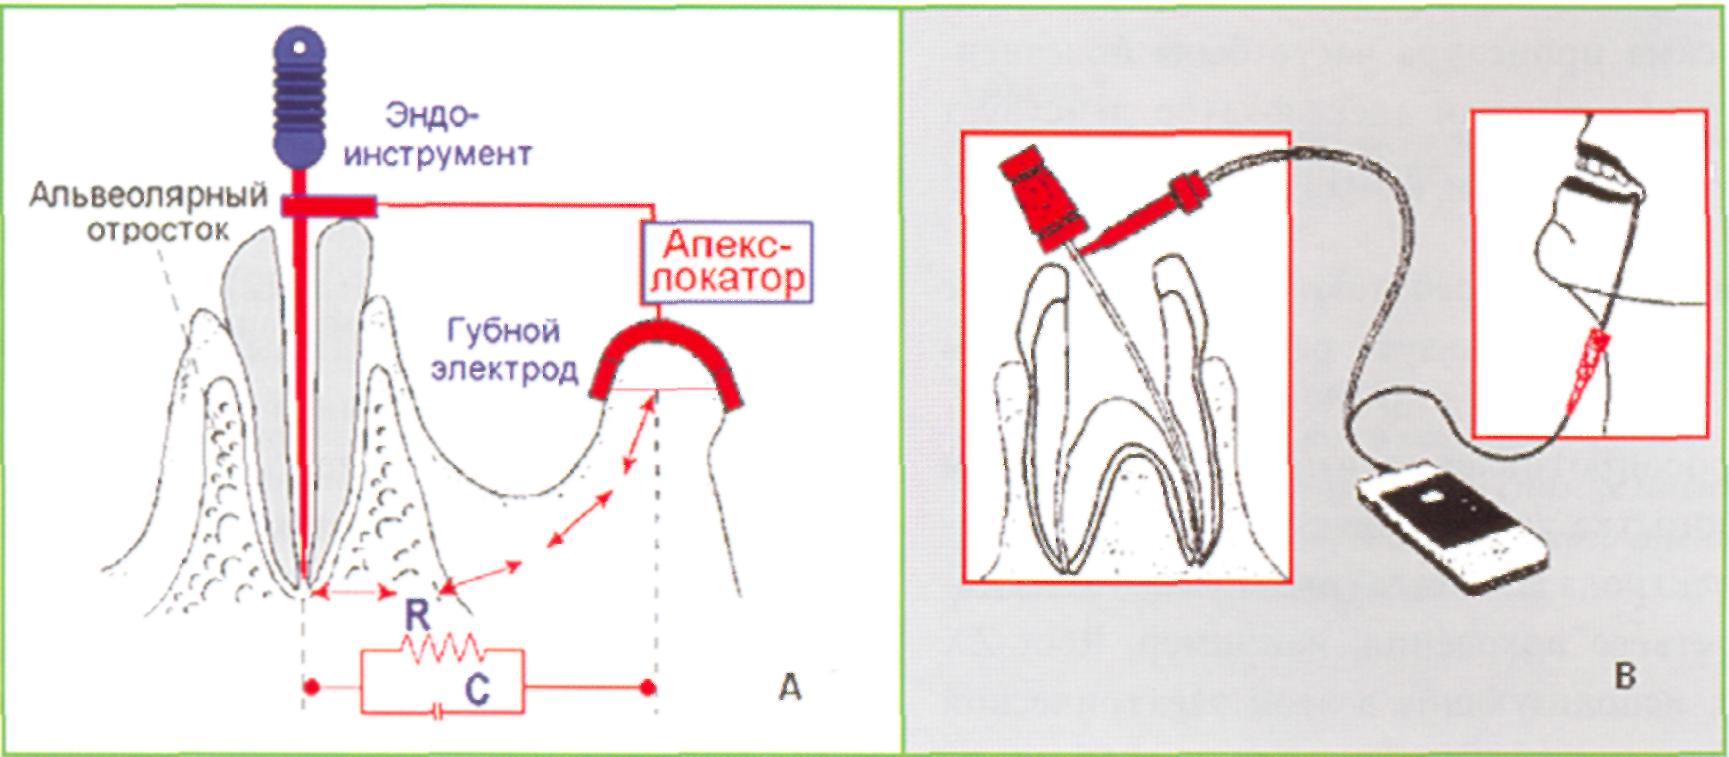 Определение корневых каналов. Импеданс в стоматологии. Прибор для измерения зубного канала. Апекслокация корневого канала. Апекслокация в стоматологии.